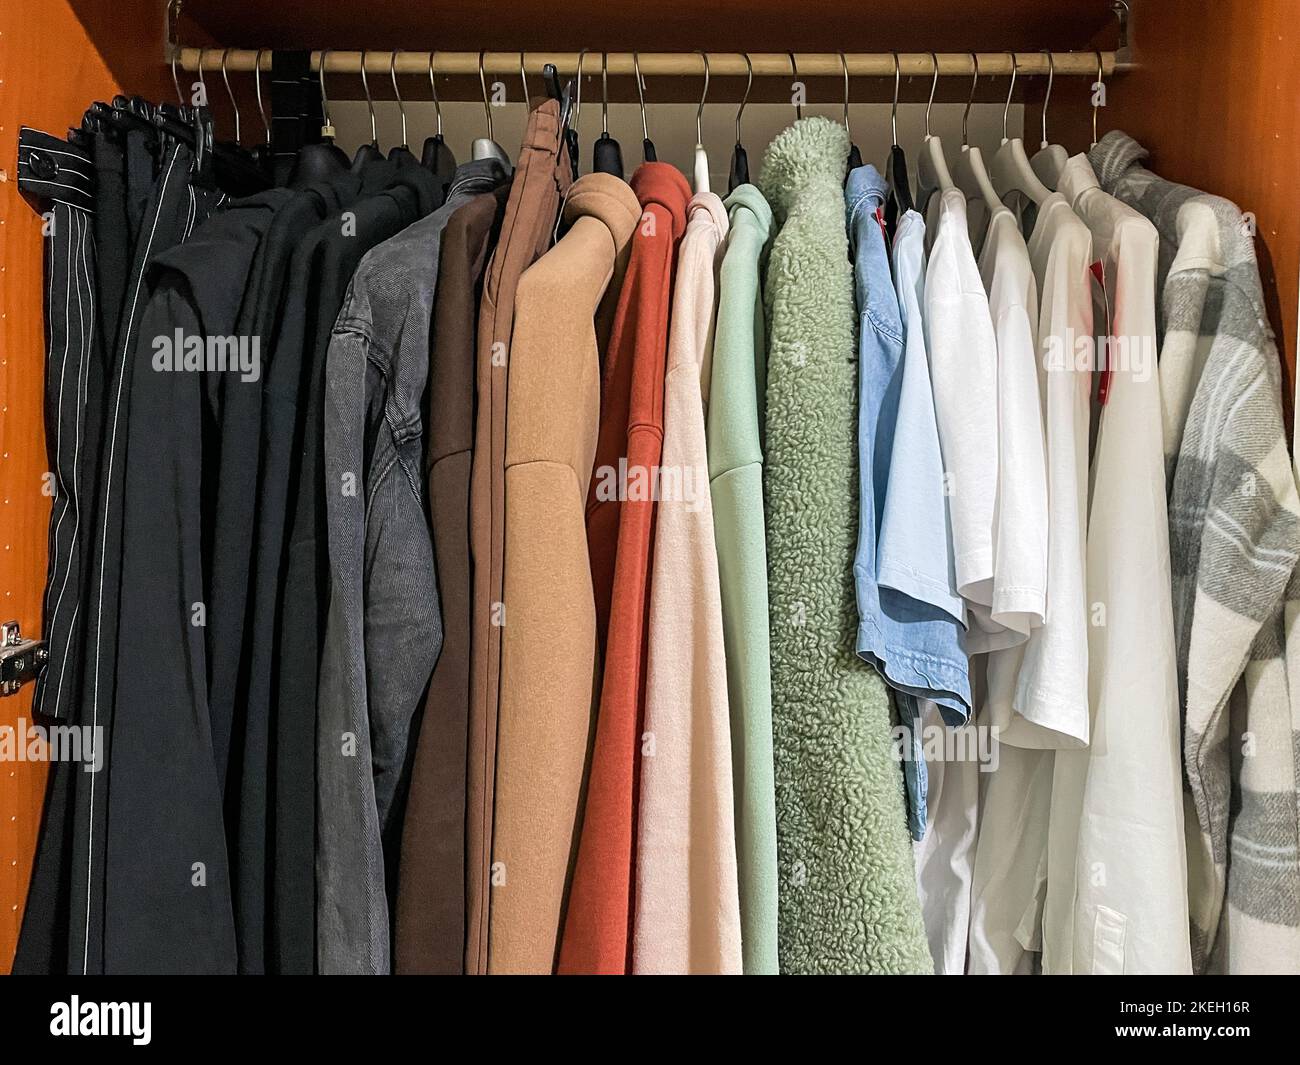 Varietà di abiti casual ragazza adolescente di diversi colori su grucce in guardaroba di legno Foto Stock